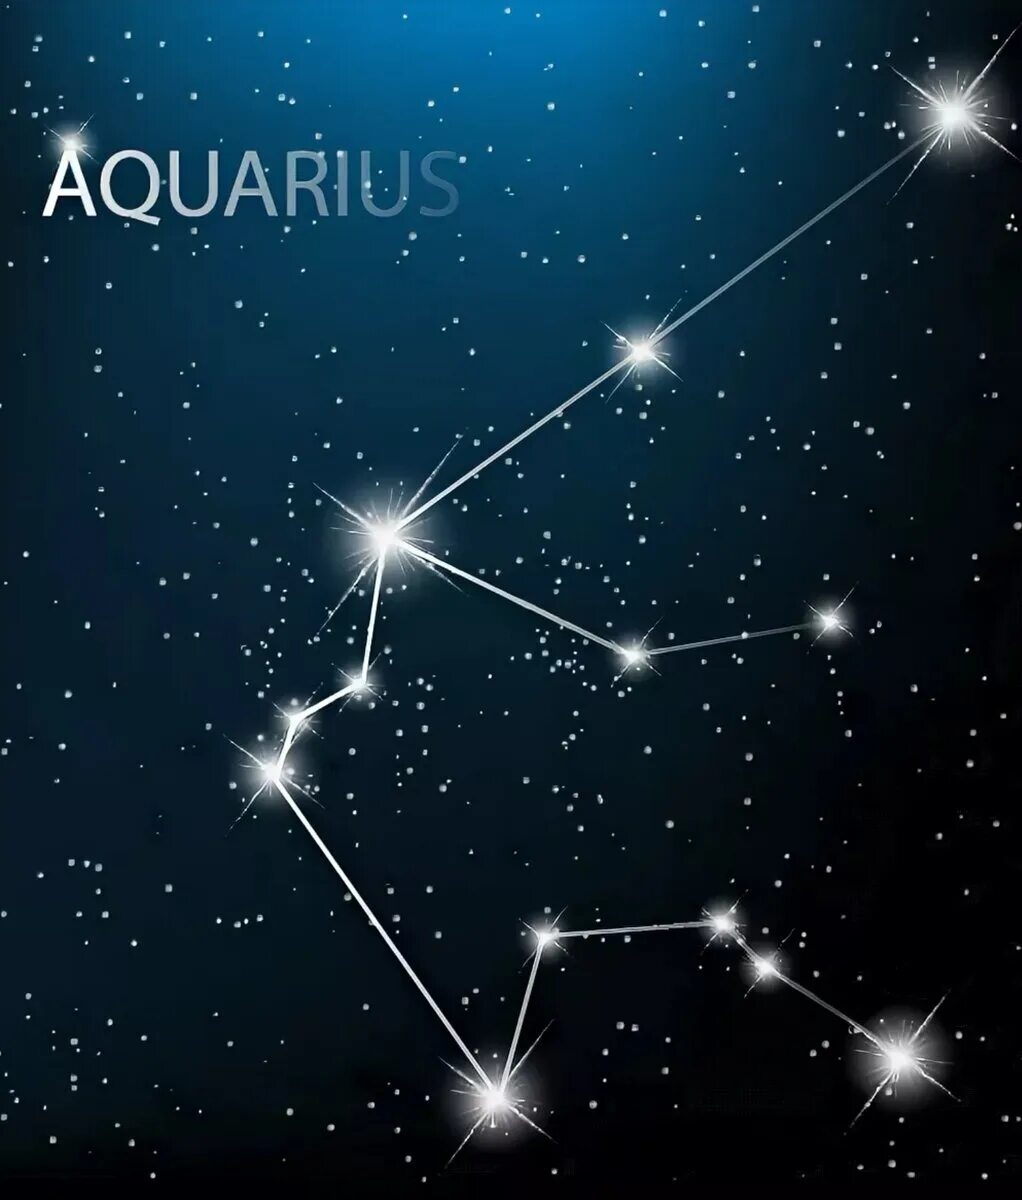 Юв звезда водолея. Водолей знак зодиака Созвездие. Созвездия знаков зодиака Водолей на небе. Аквариус Созвездие Водолея. Водолей знак зодиака Созвездие на небе.